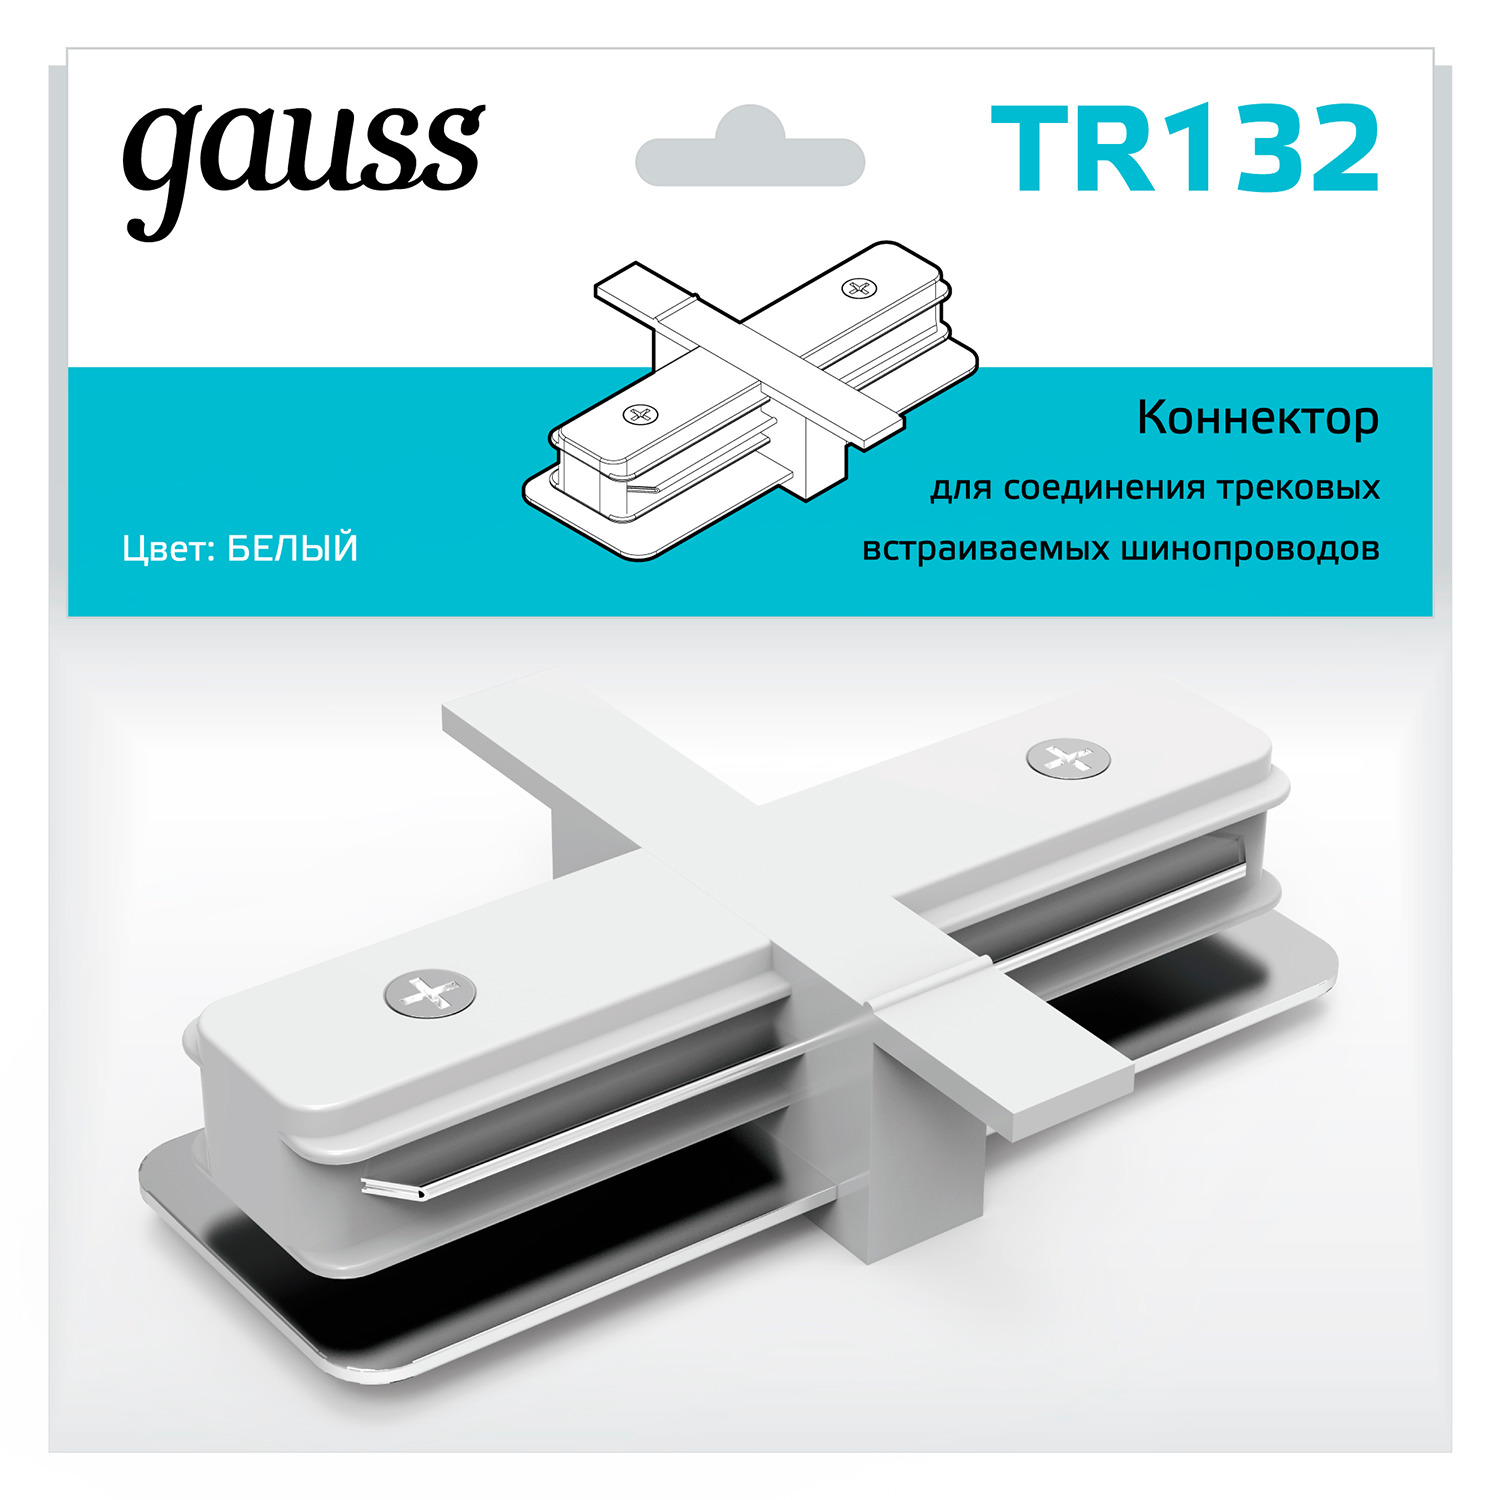 Коннектор Gauss для встраиваемых трековых шинопроводов прямой (I) белый gauss коннектор для встраиваемых трековых шинопроводов гибкий белый 1 50 tr142